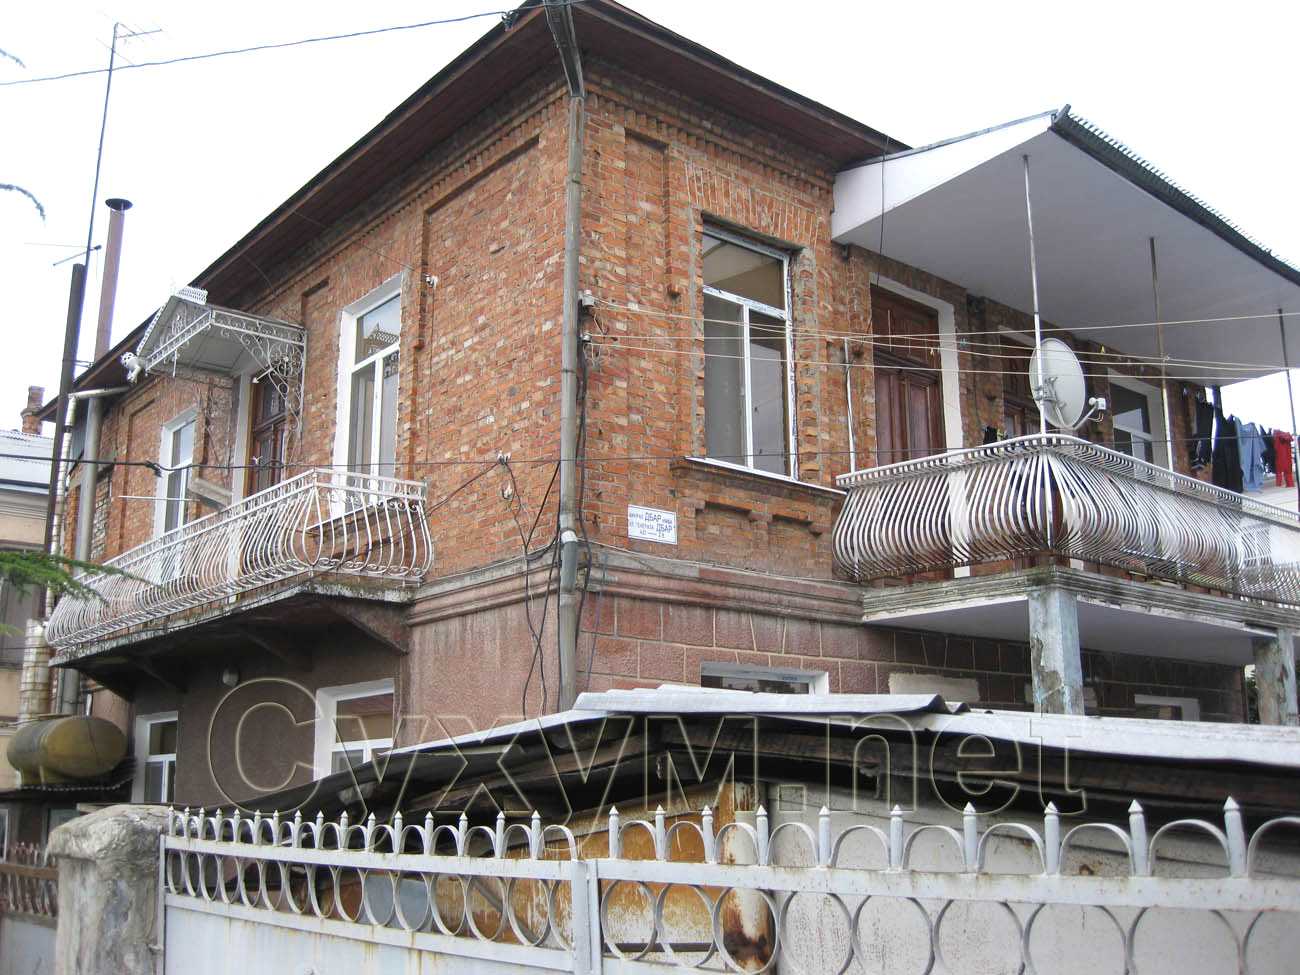 двухэтажный кирпичный дом на перекрёстке д. гулия - генерала дбар